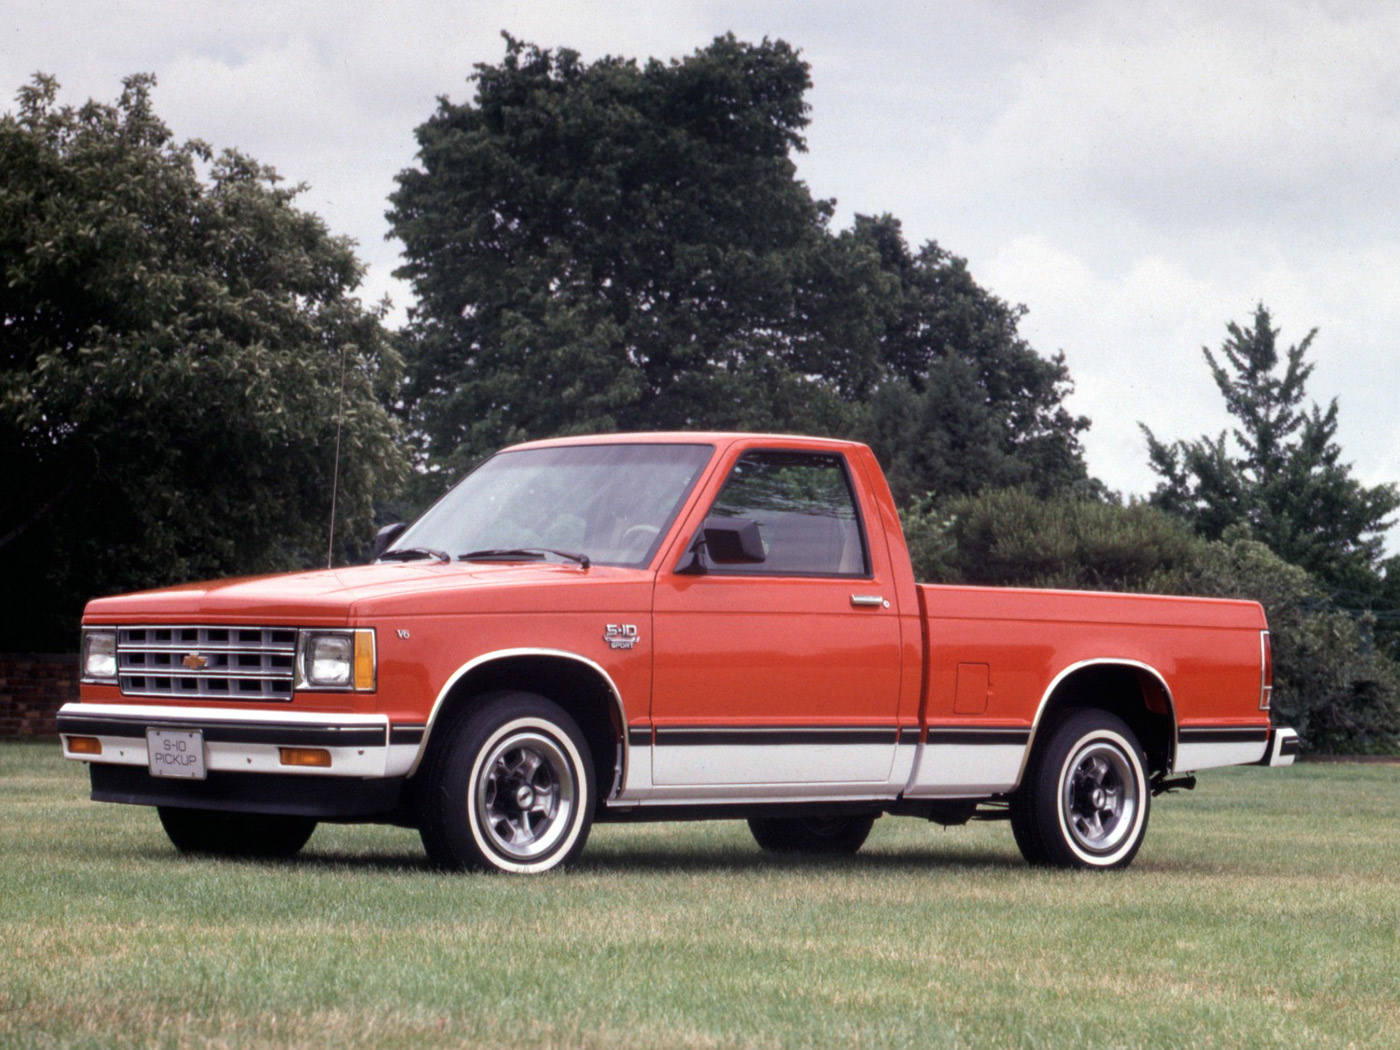 Tìm hiểu lịch sử dòng xe bán tải Chevrolet chevrolet-s10-1982.jpg